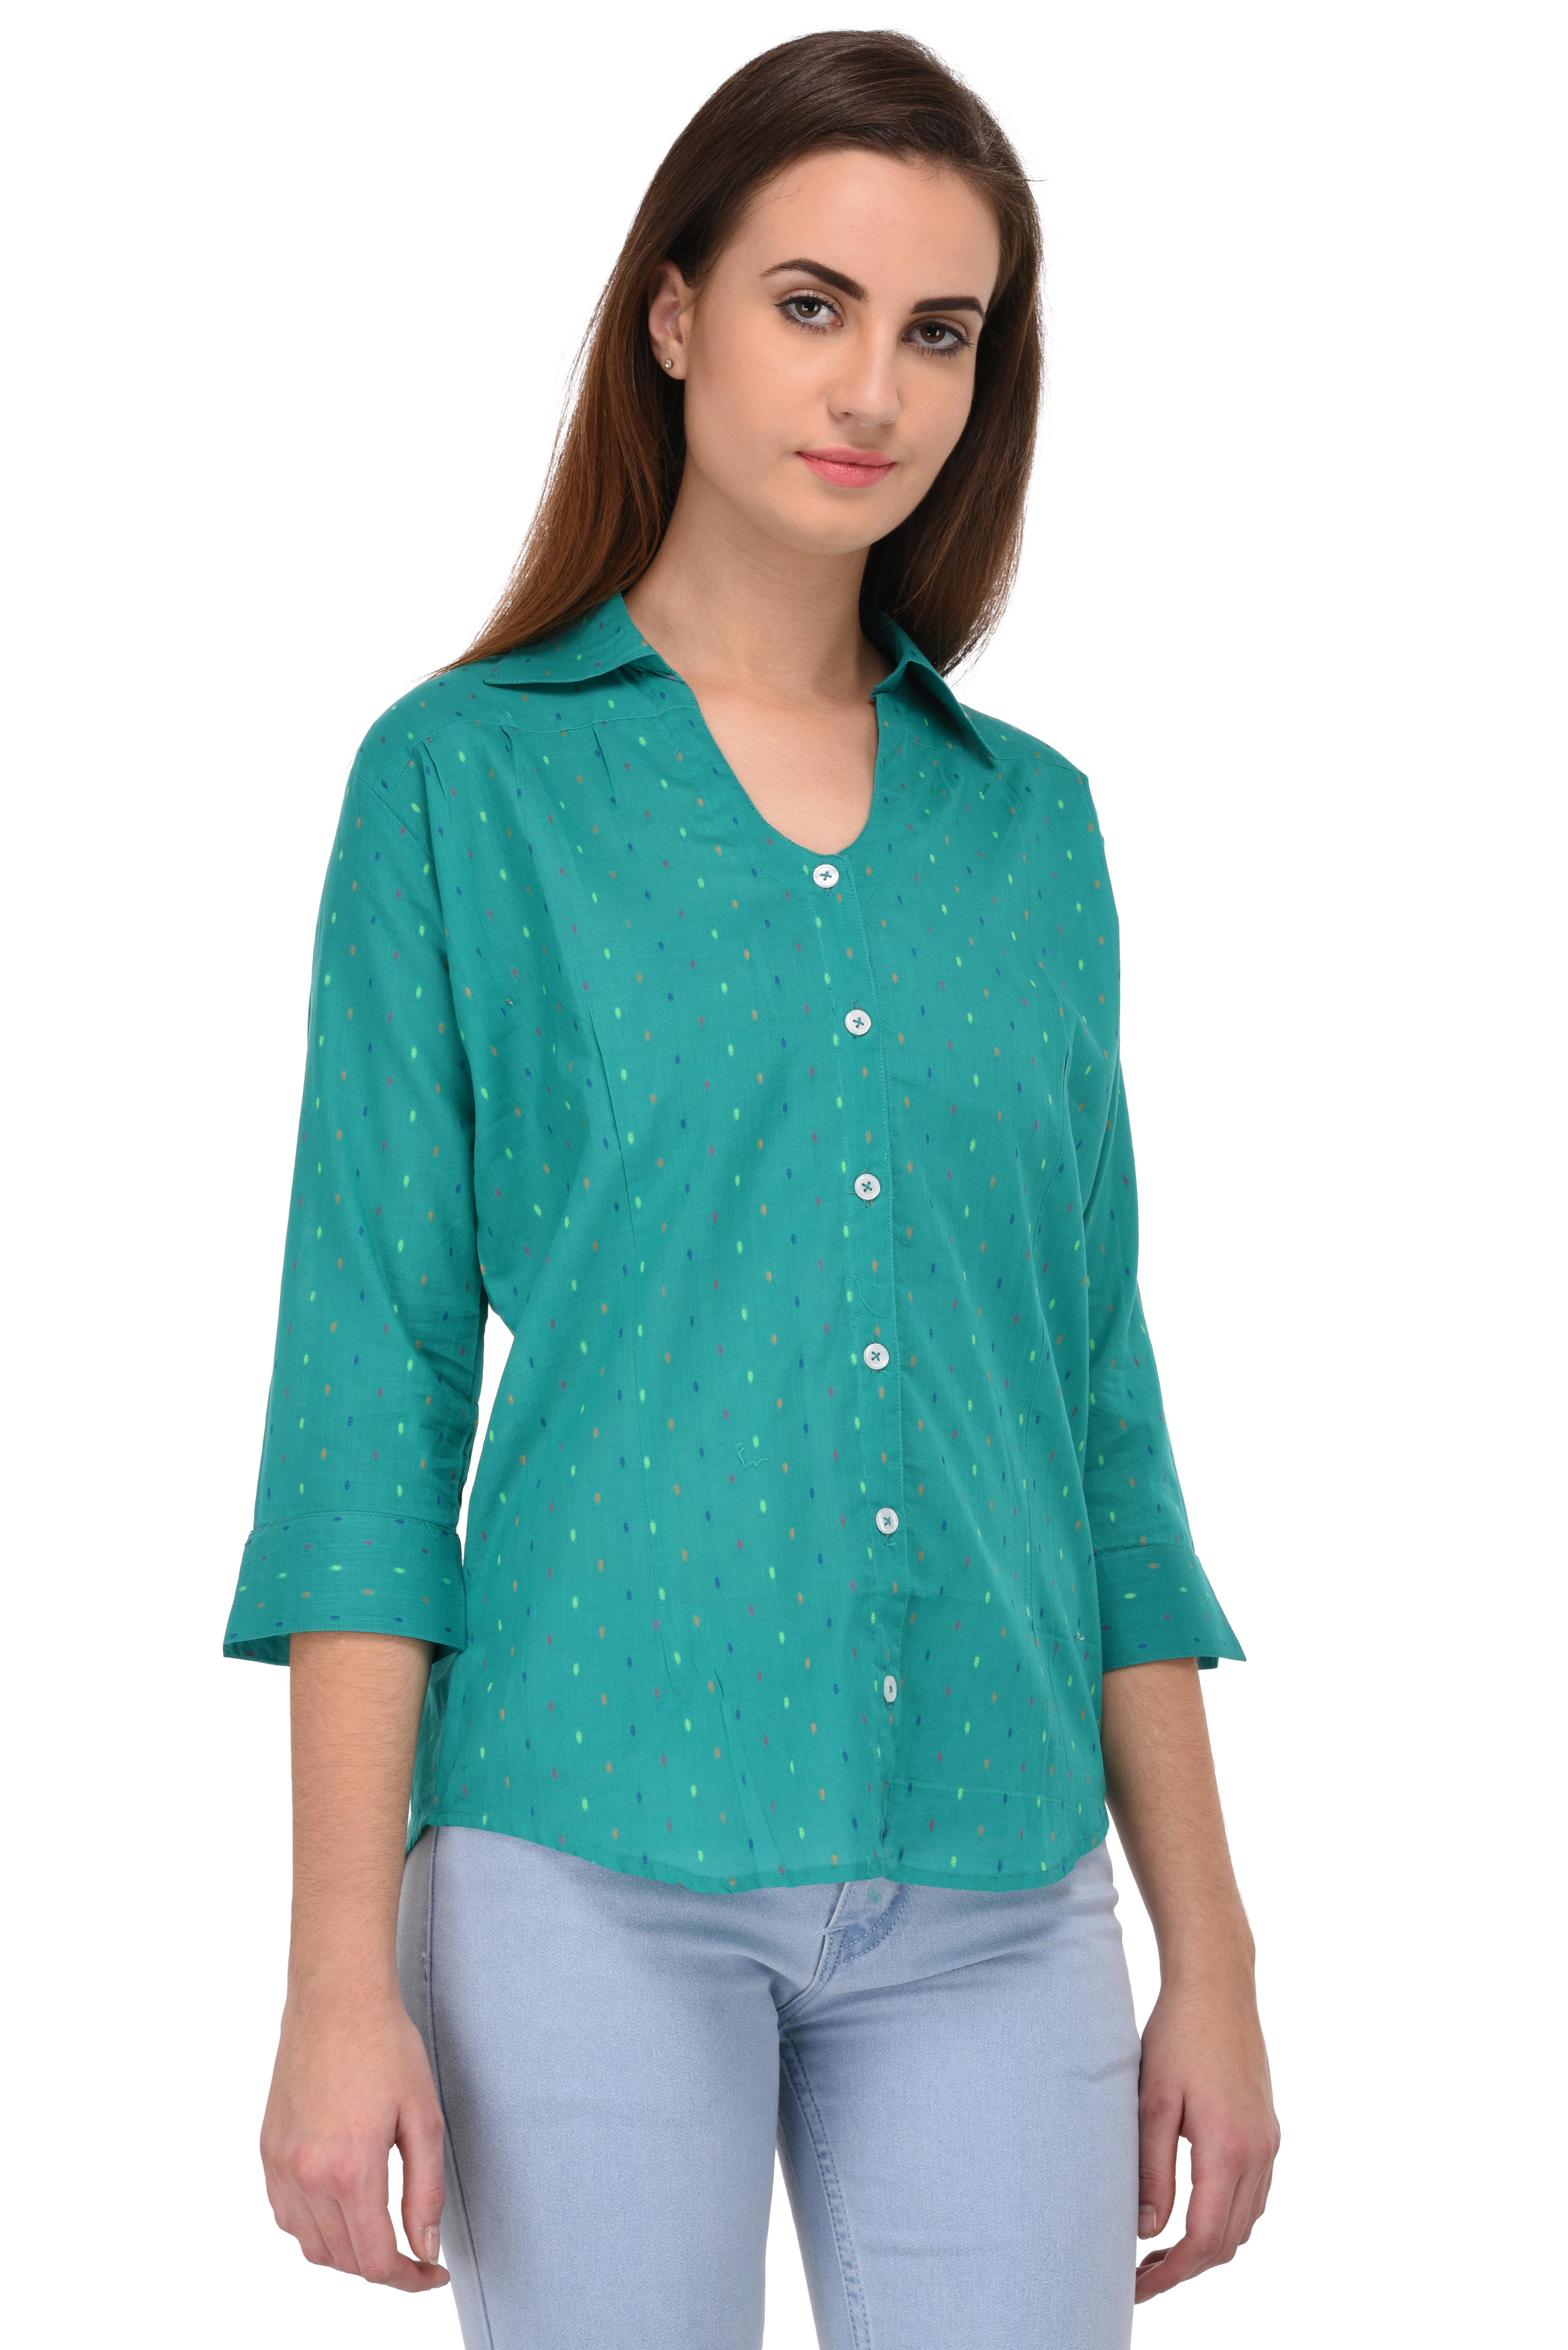 Buy Kooo Women's Peacock Blue Multi Dot V Neck 3/4 Sleeve shirt Online ...